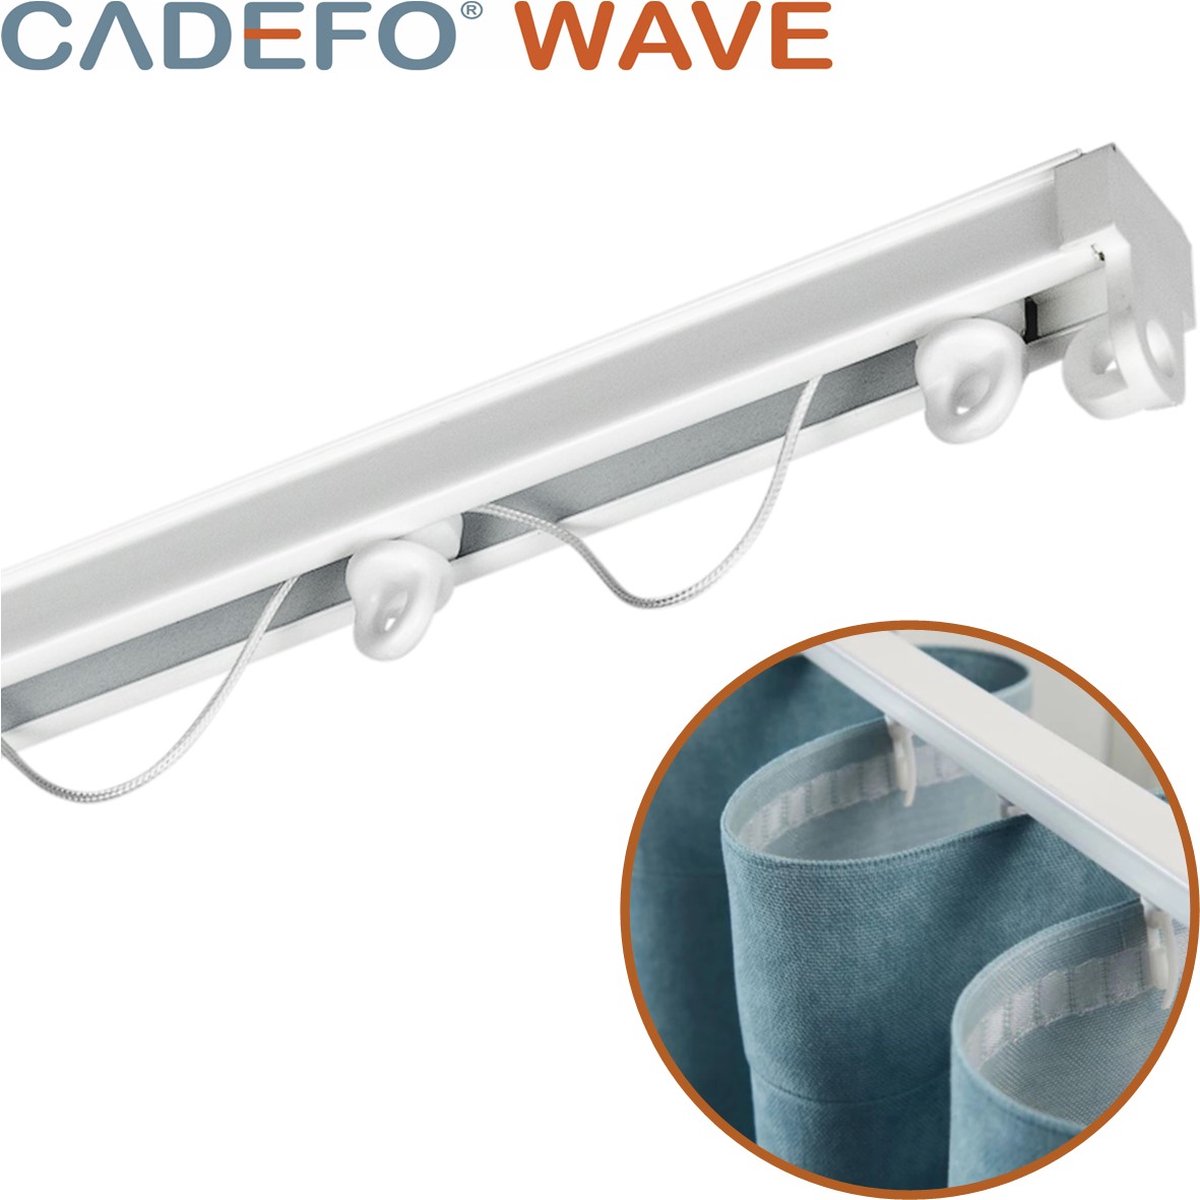 CADEFO WAVE (301 - 350 cm) Gordijnrails - Compleet op maat! - UIT 1 STUK - Leverbaar tot 6 meter - Plafondbevestiging - Lengte 332 cm